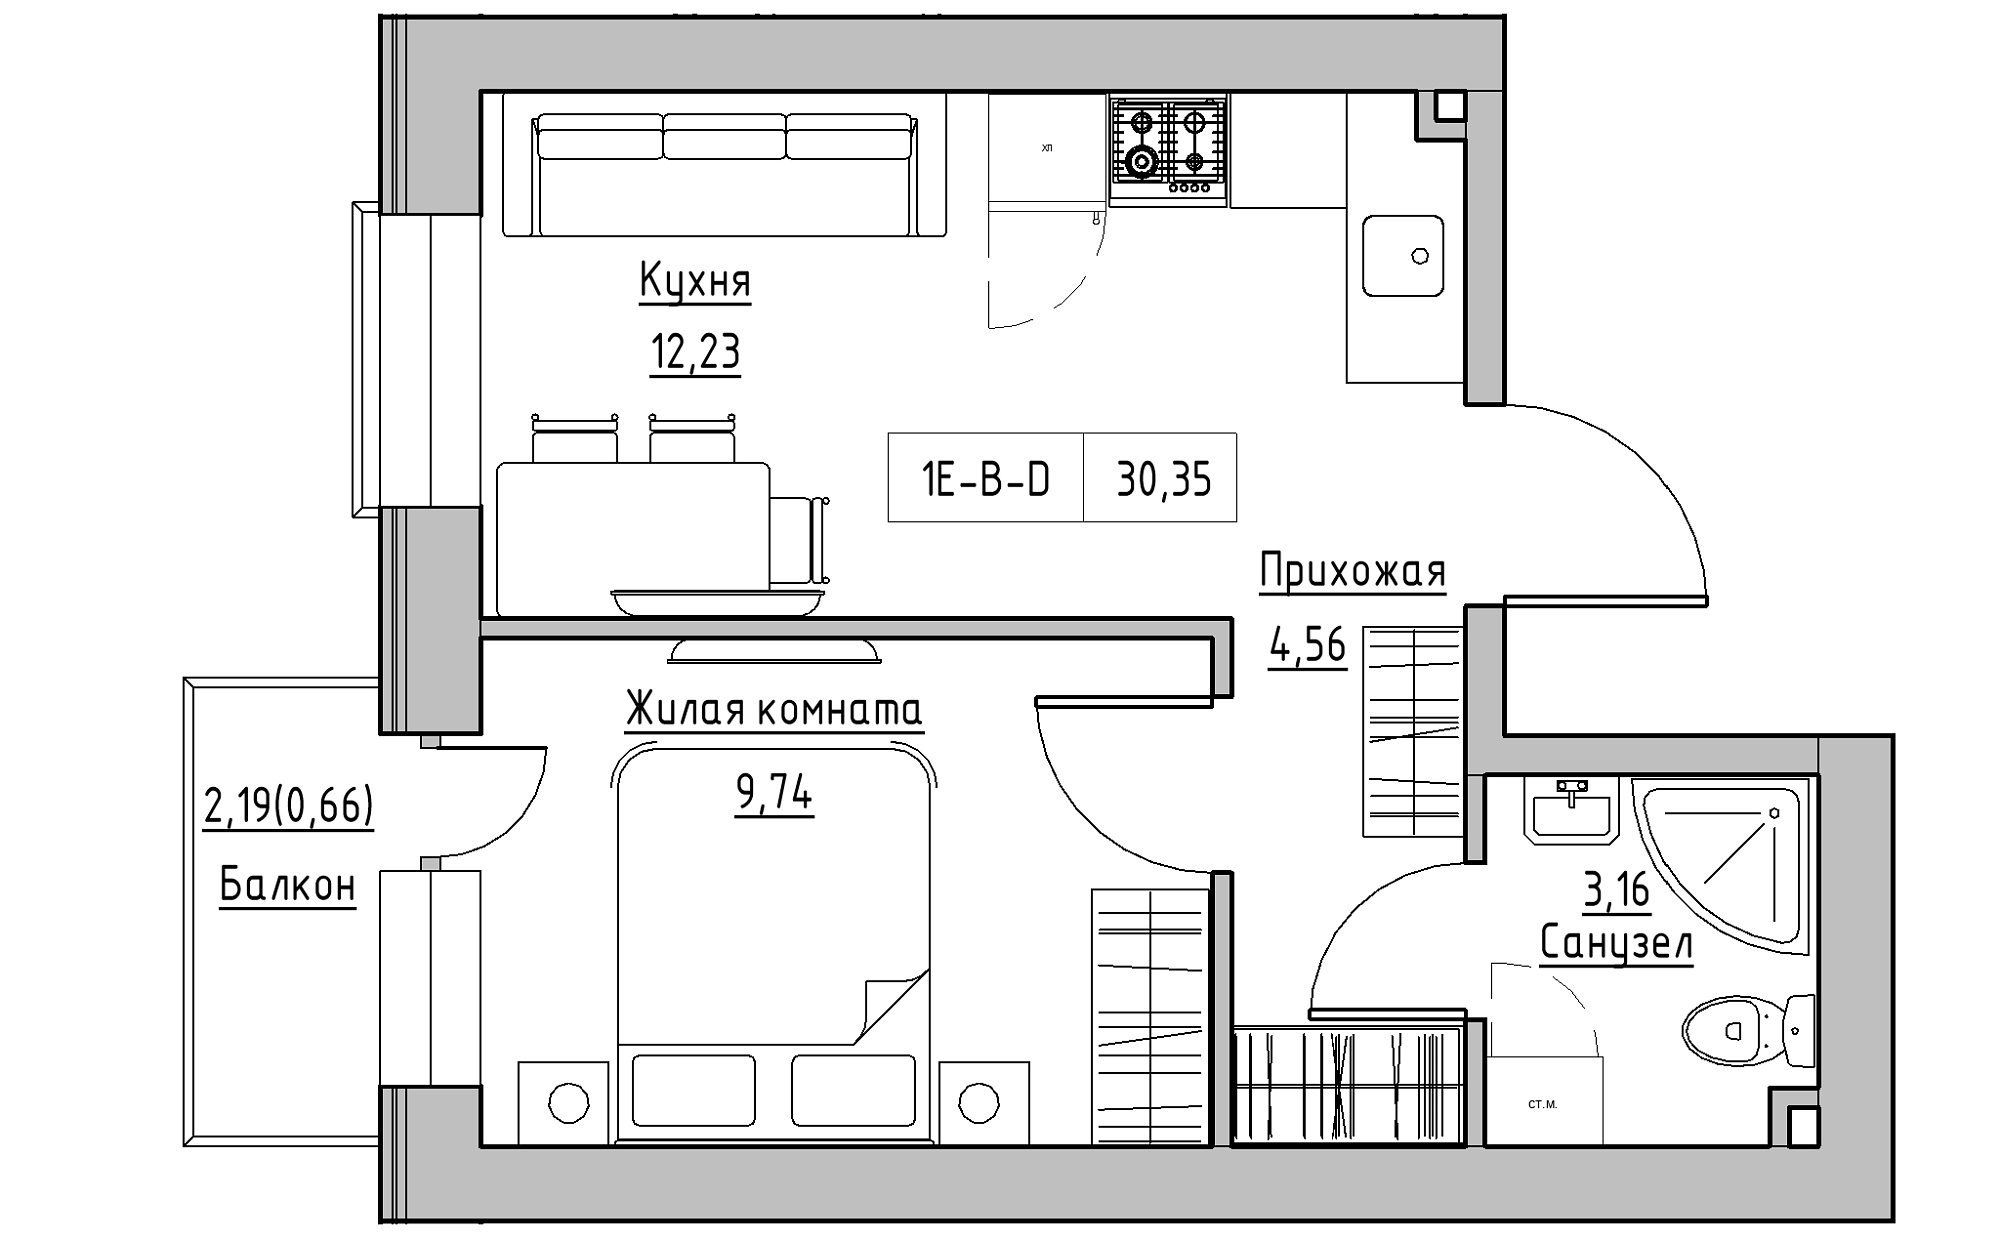 Планування 1-к квартира площею 30.35м2, KS-022-02/0012.